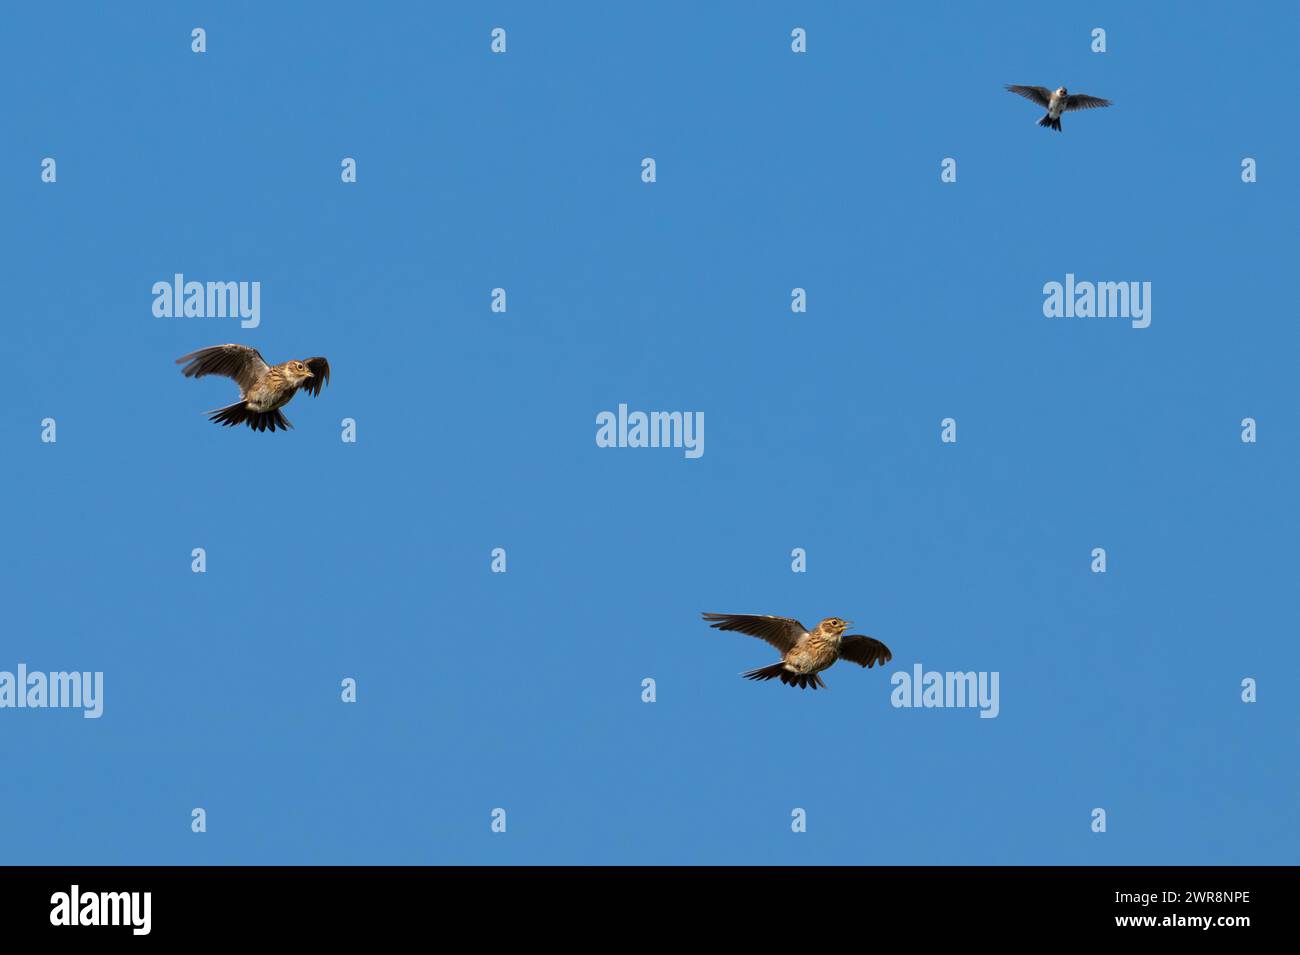 Trois skylarks eurasiens (Alauda arvensis) faisant escale en vol contre un ciel bleu au printemps. Composite numérique Banque D'Images